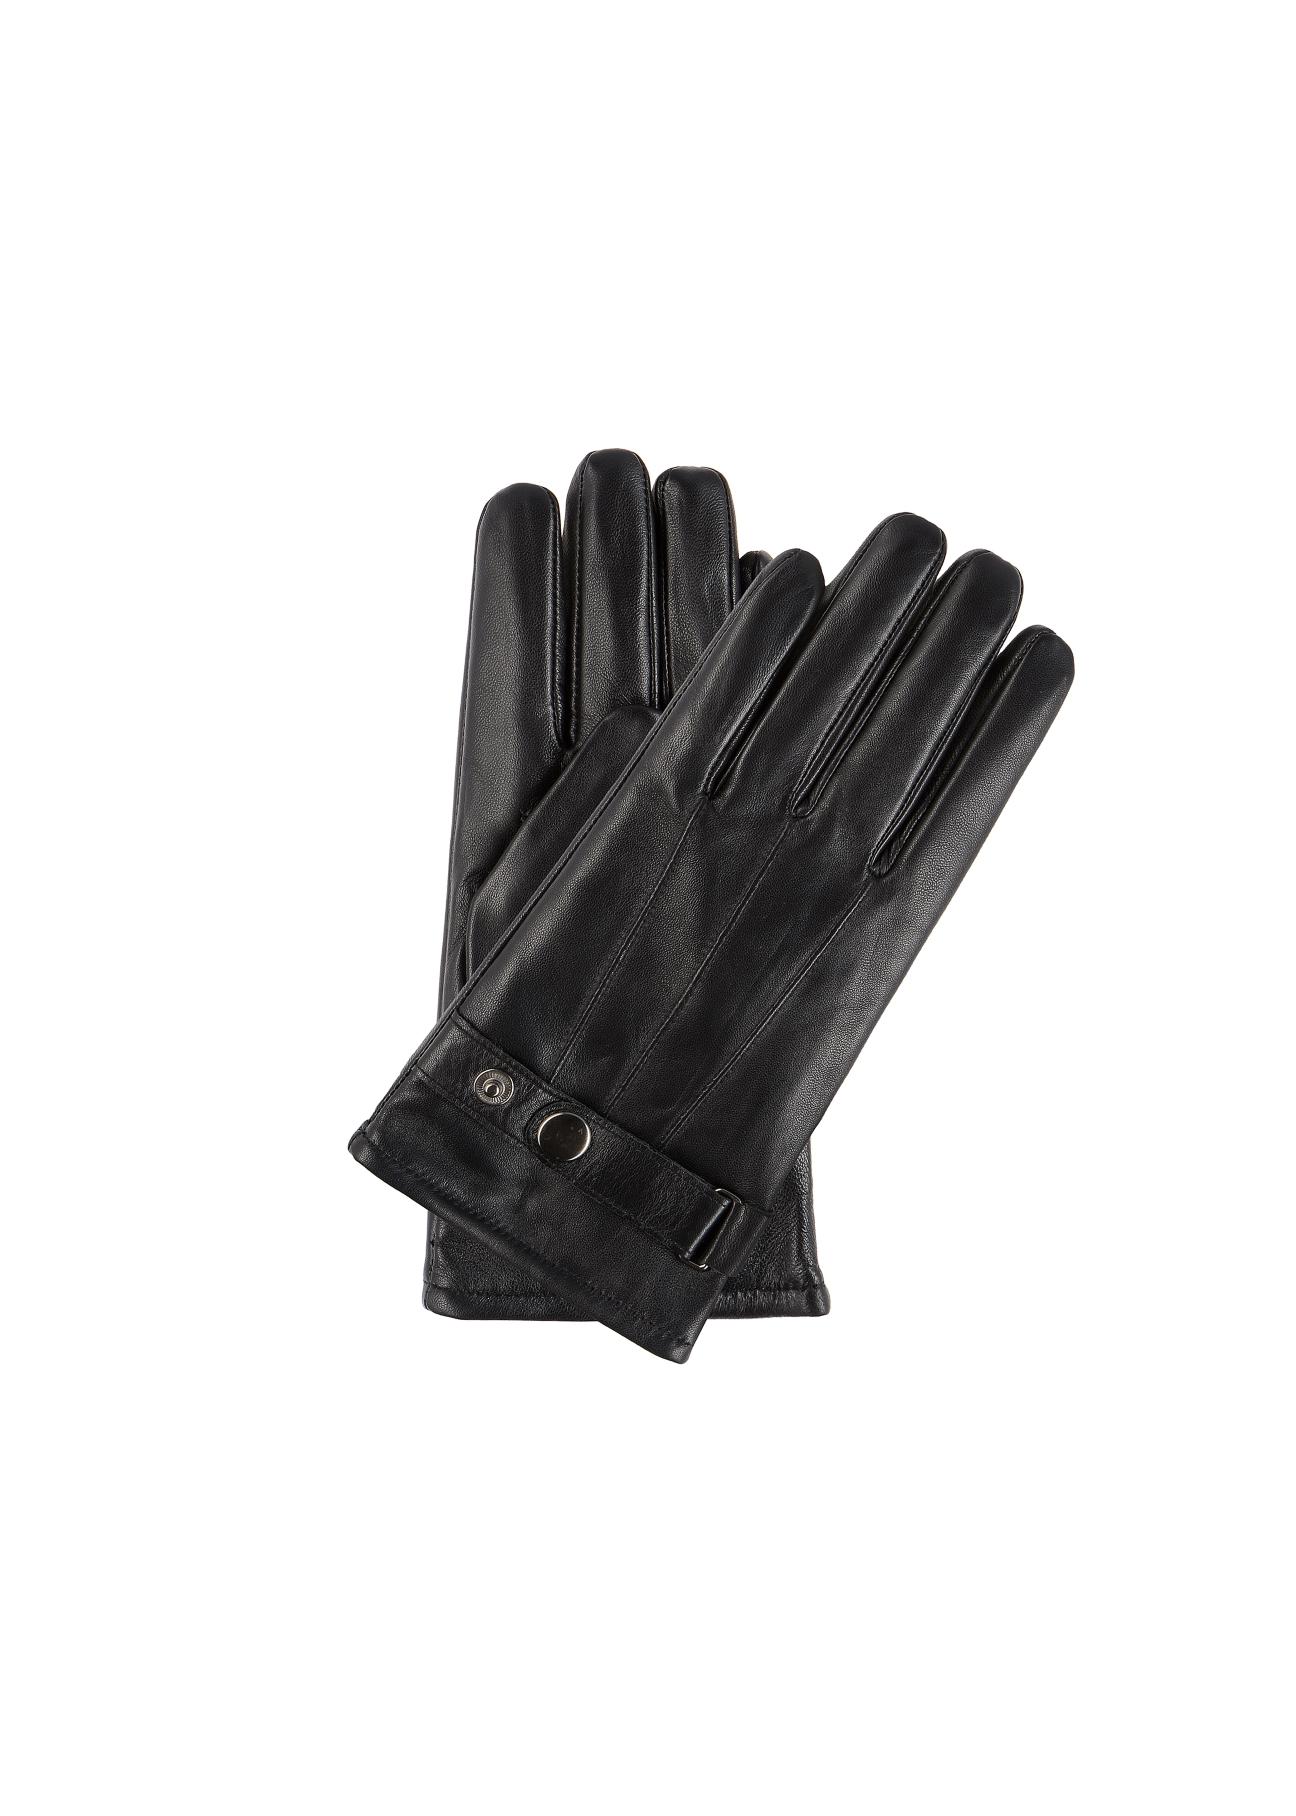 Skórzane rękawiczki męskie z regulacją REKMS-0022-99(Z23)